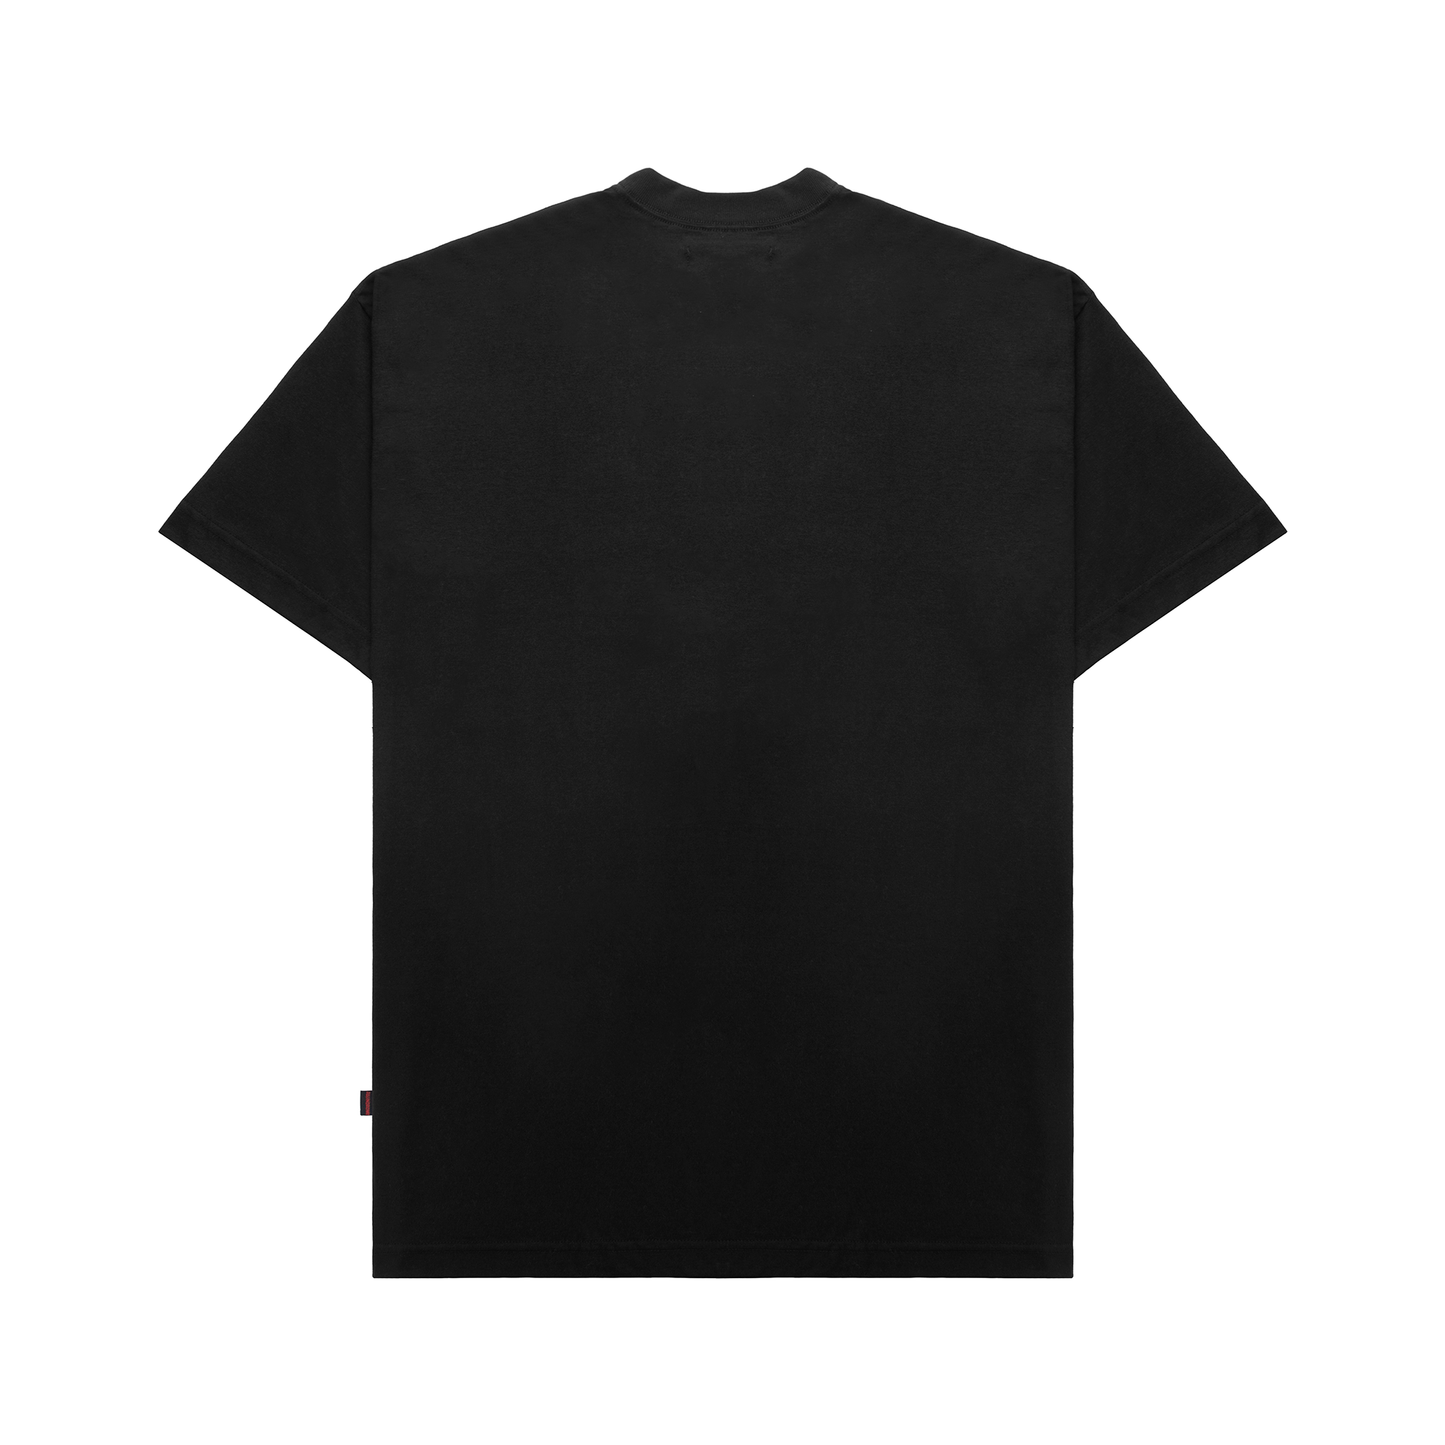 Essential T-shirt - Black